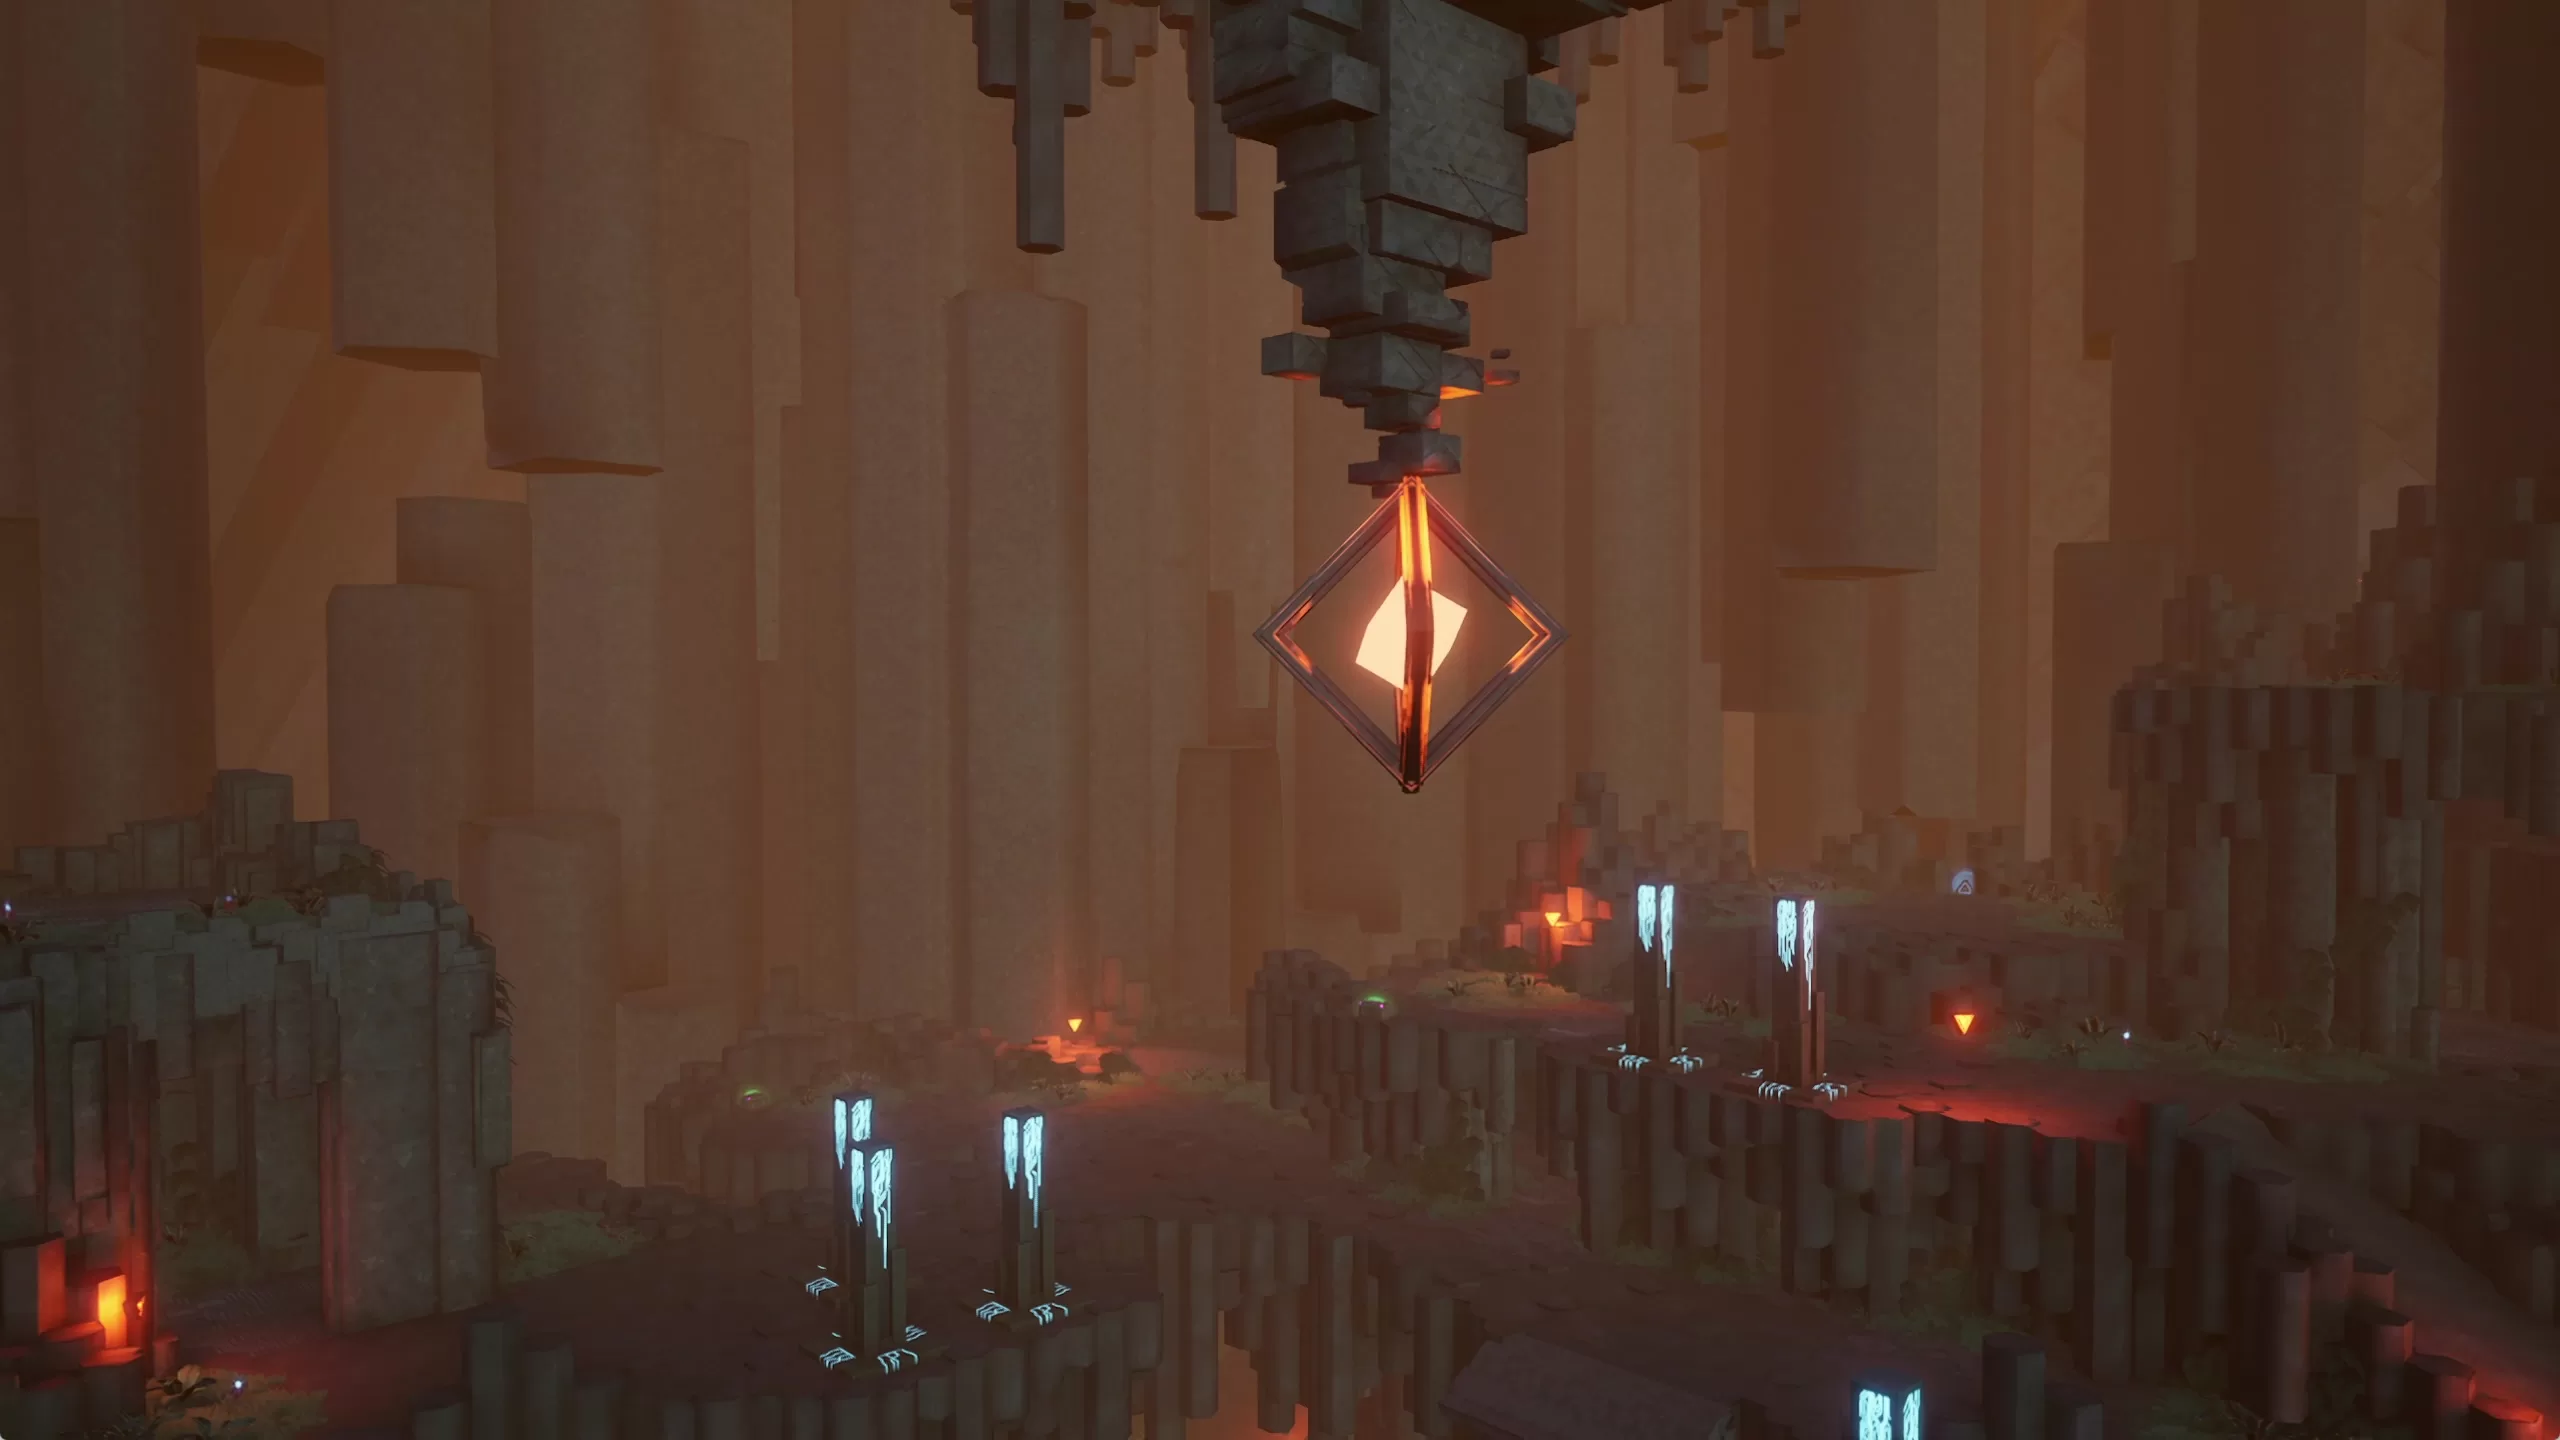 Prism Pillar